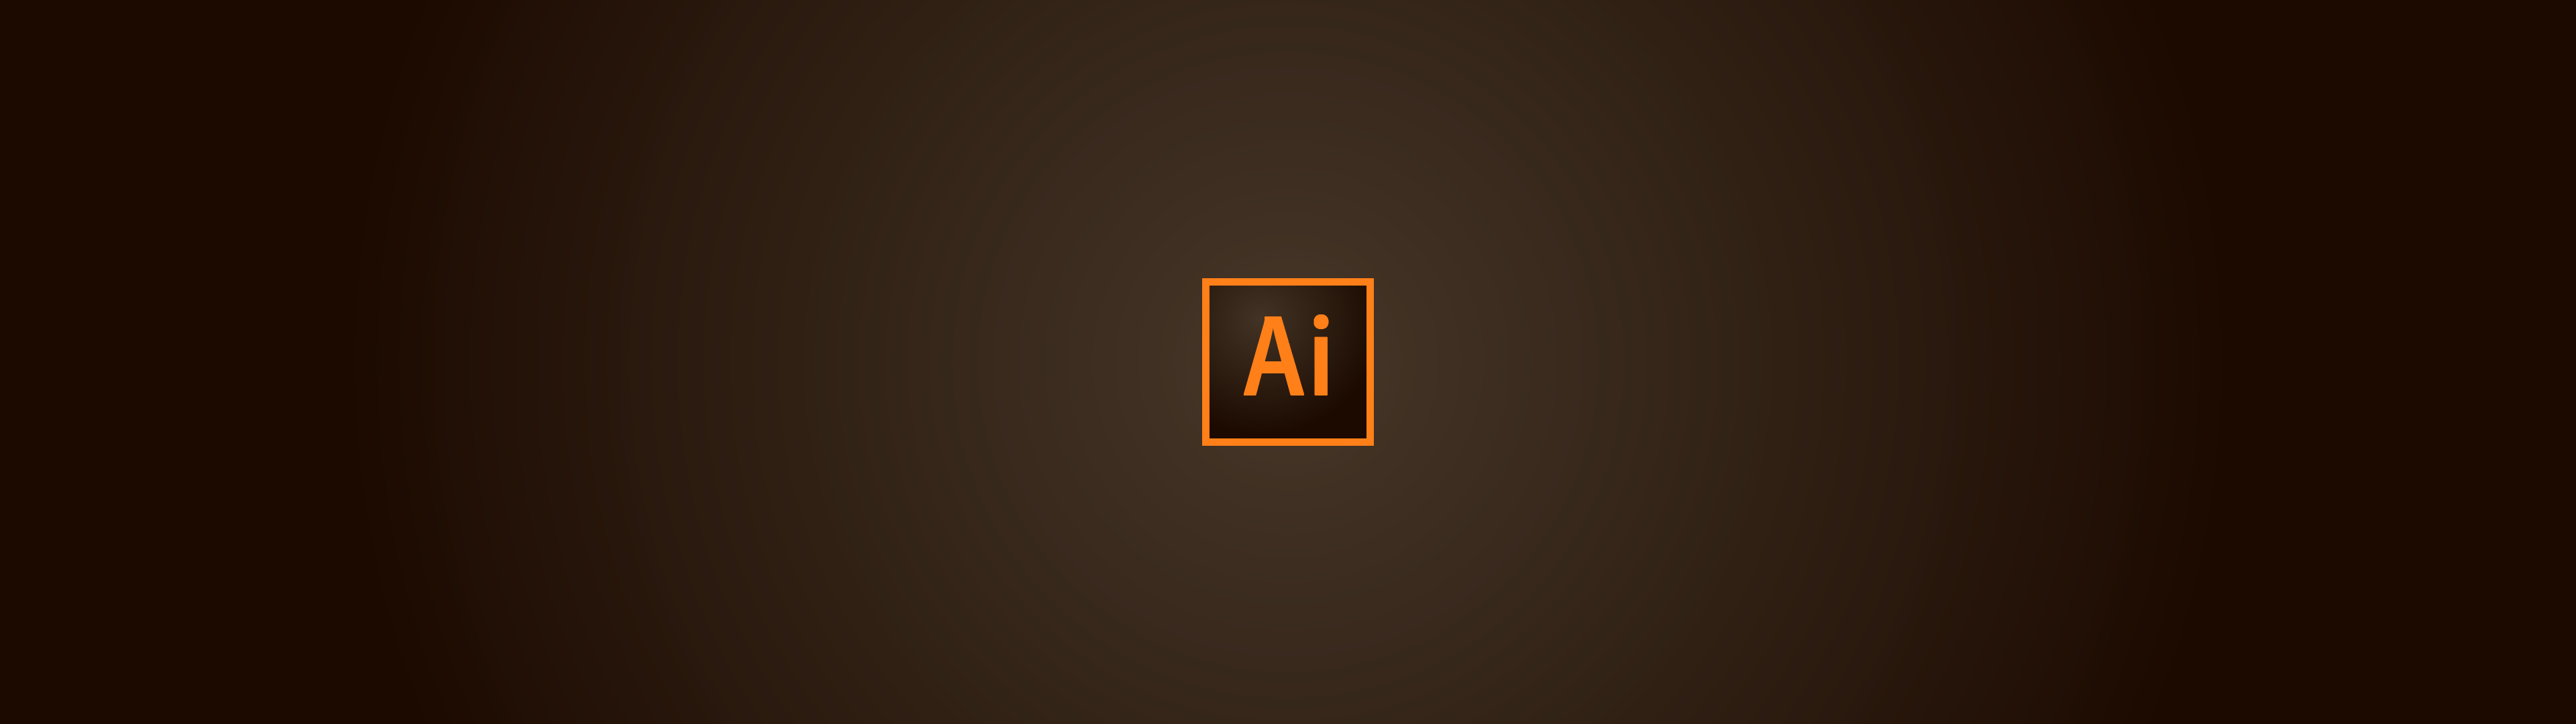 Illustration représentant le logo du logiciel Adobe Illustrator sur un fond dégradé